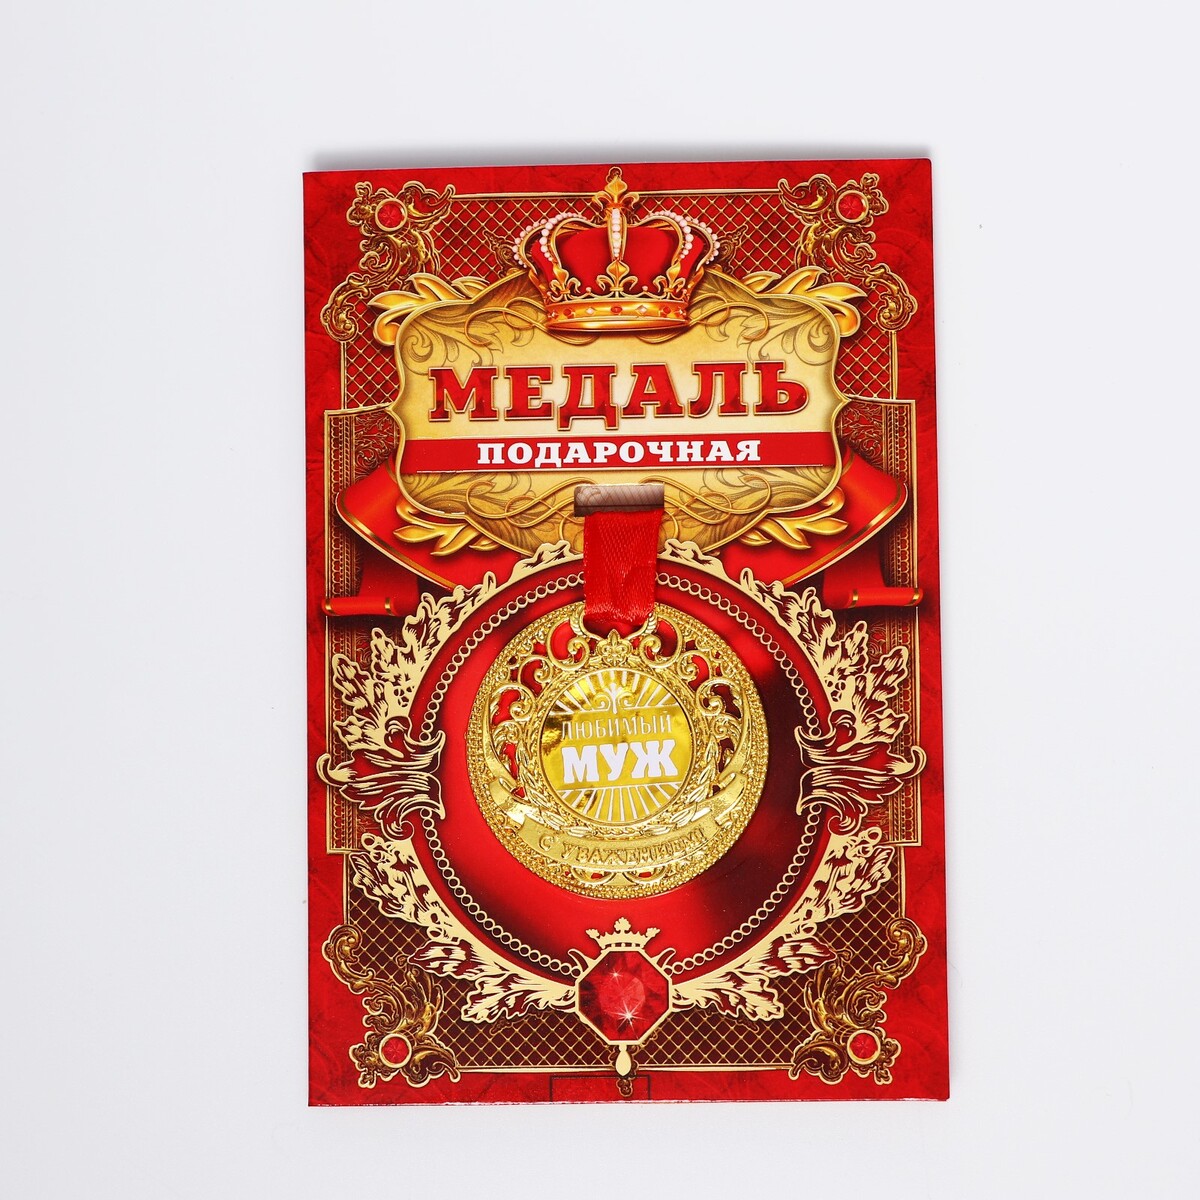 Медаль царская царская великокняжеская резиденция ильинское и усово